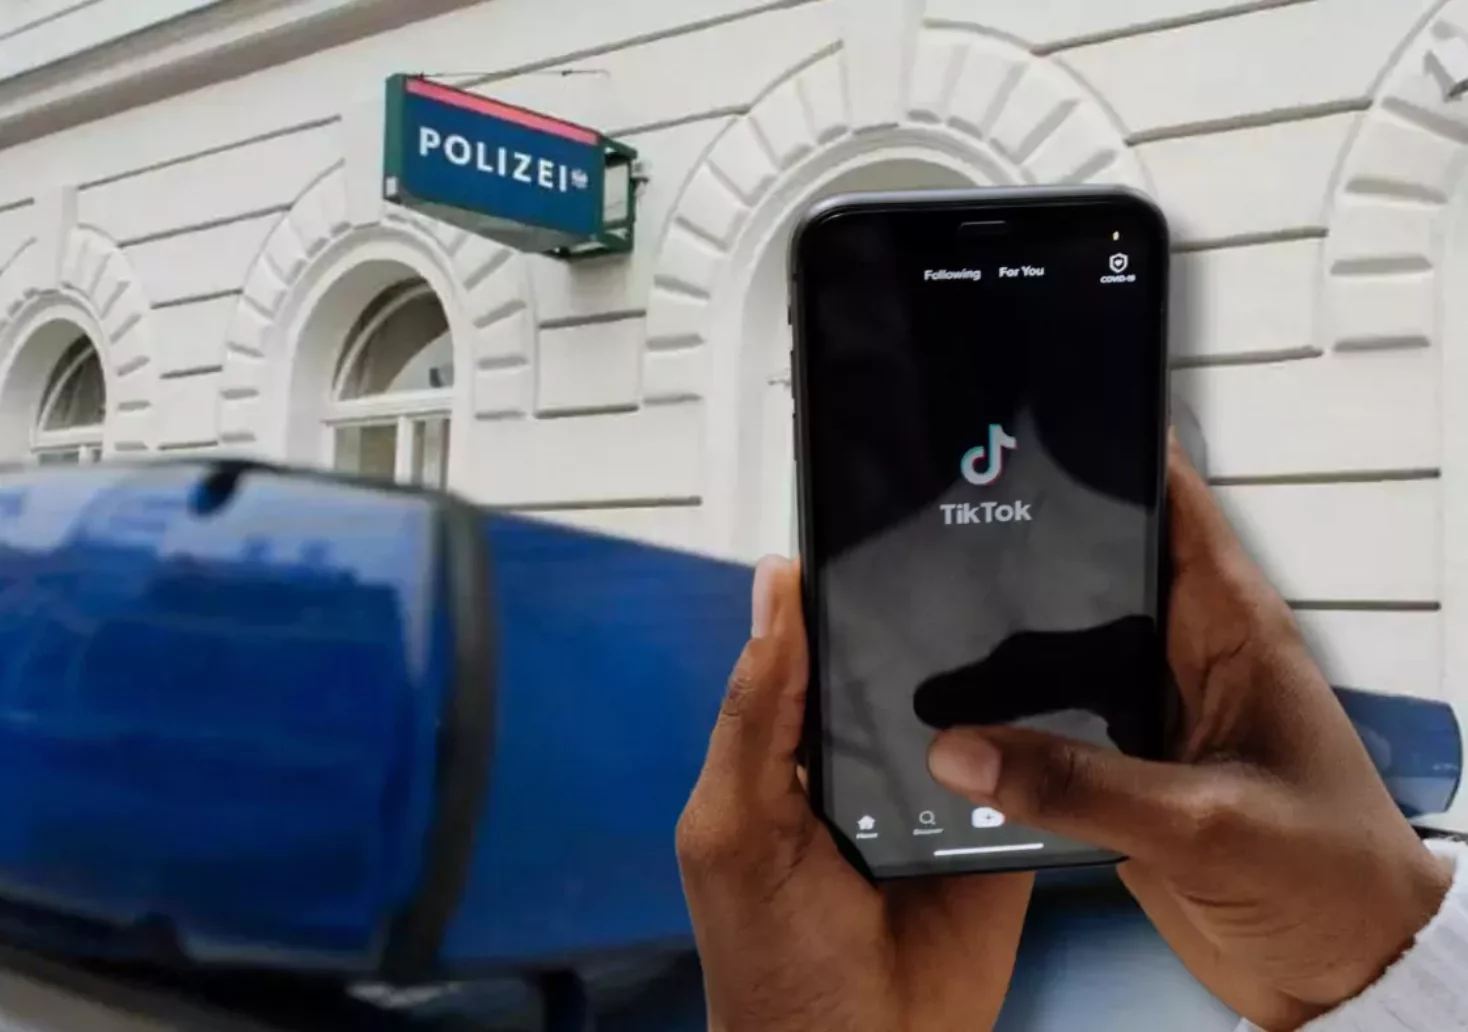 Bildmontage auf 5min.at zeigt ein Polizei-Gebäude im Hintergrund und ein Handy mit der App TikTok im Vordergrund.